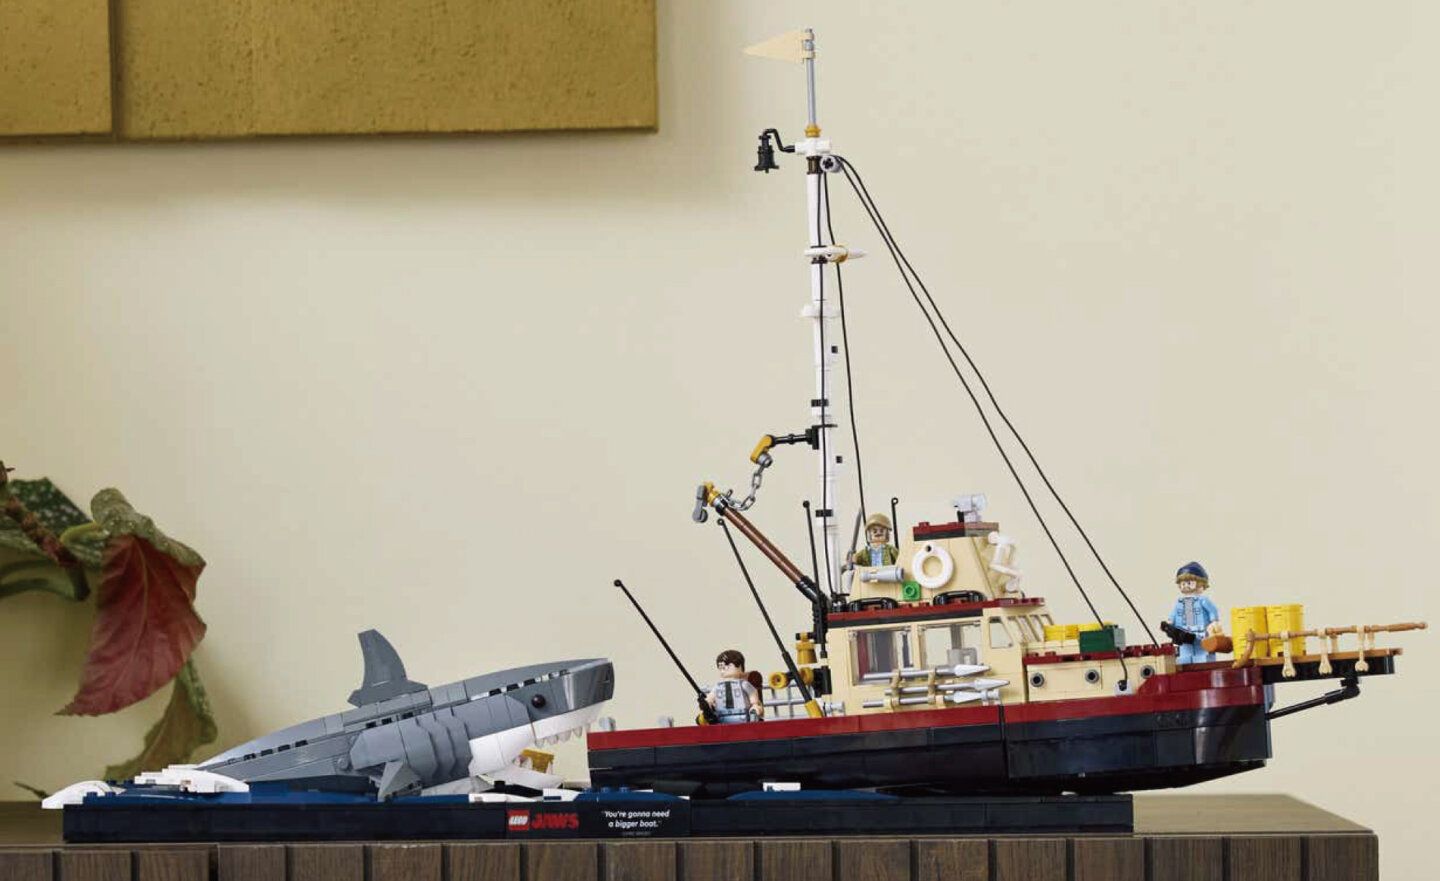 Lego 樂高重現《大白鯊》最終對決的迷你電影，套裝組將於 8/6 上市